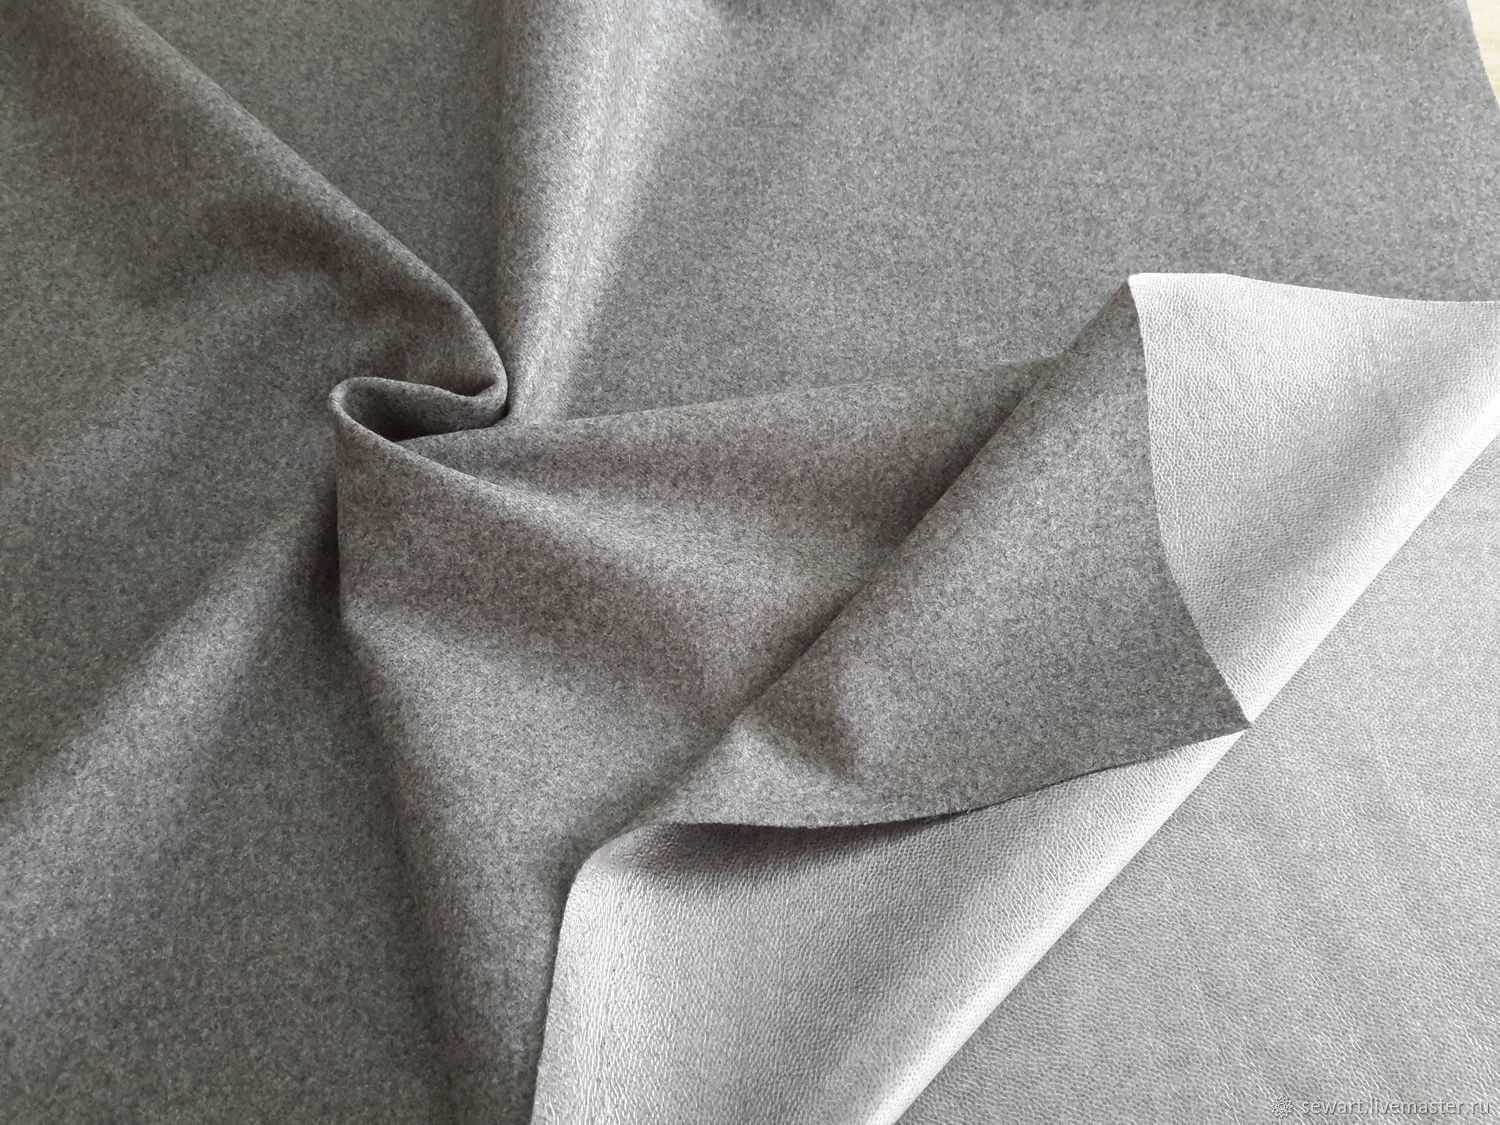 Как делают ткань - сукно и когда появились первые образцы этой ткани